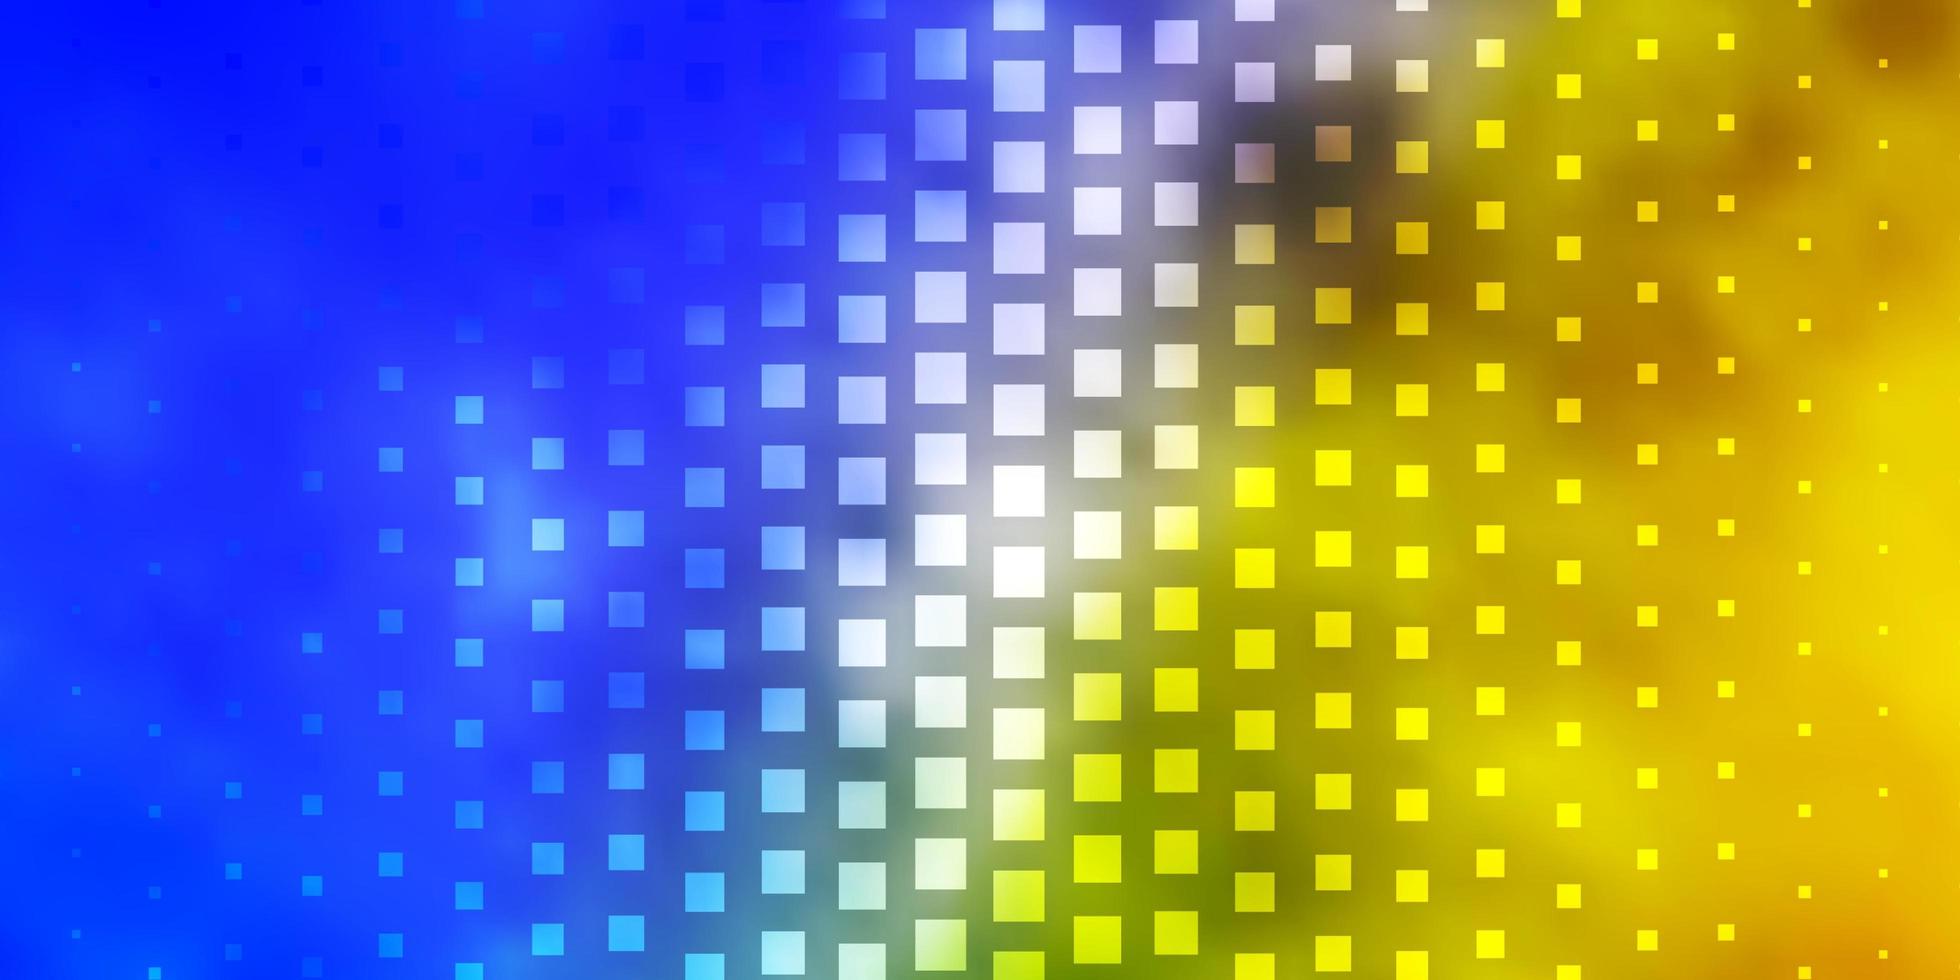 hellblaues, gelbes Layout mit Linien, Rechtecken. vektor